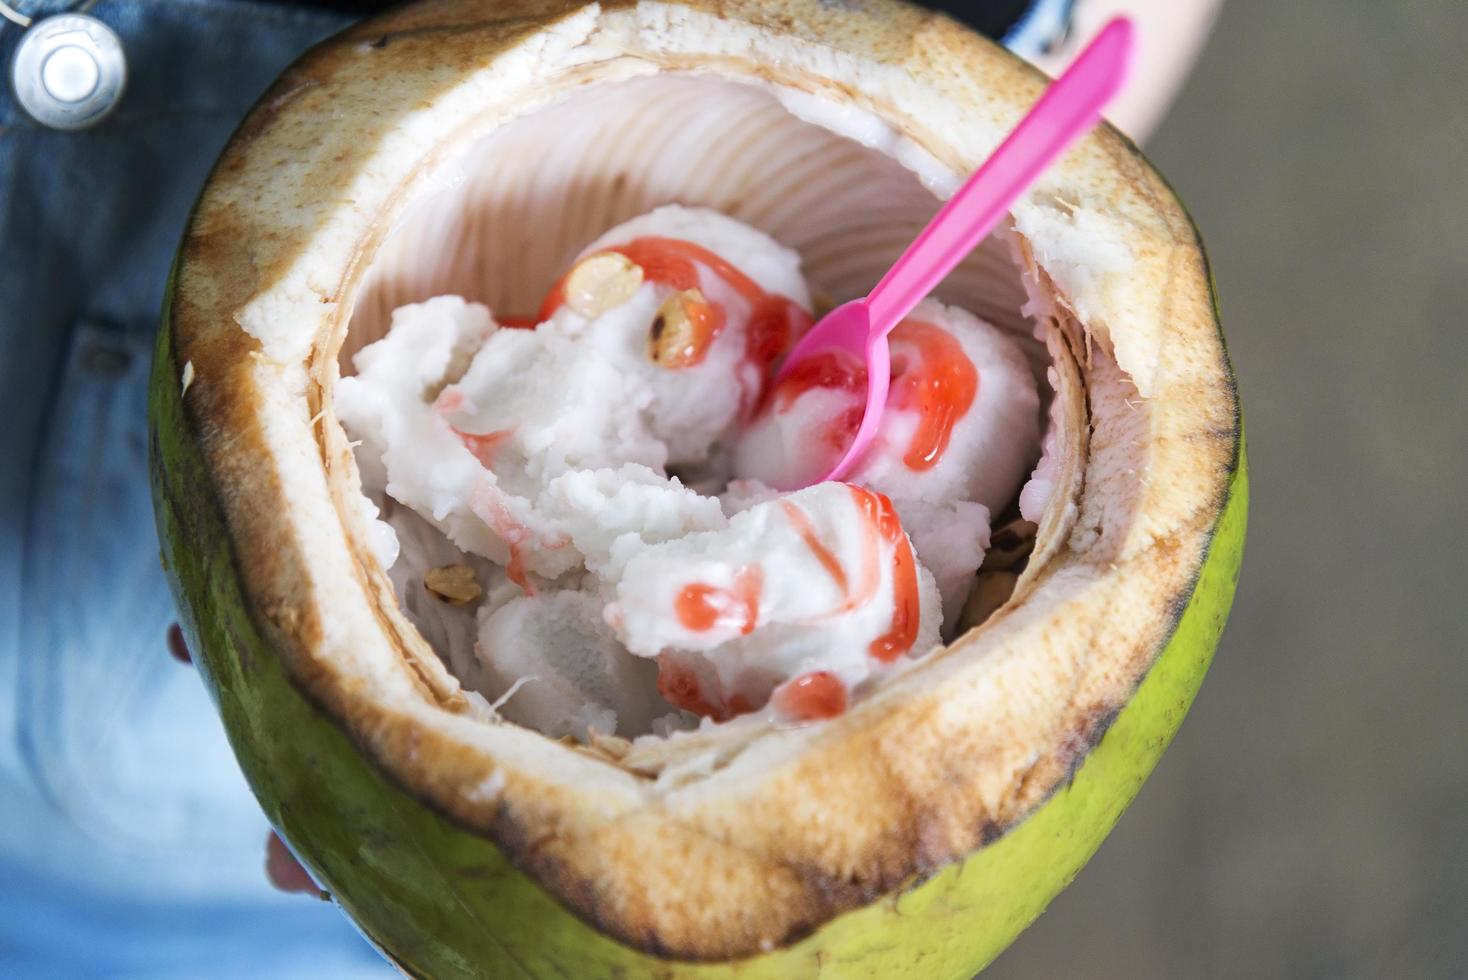 natürliches kokosnusseis in thailand. foto